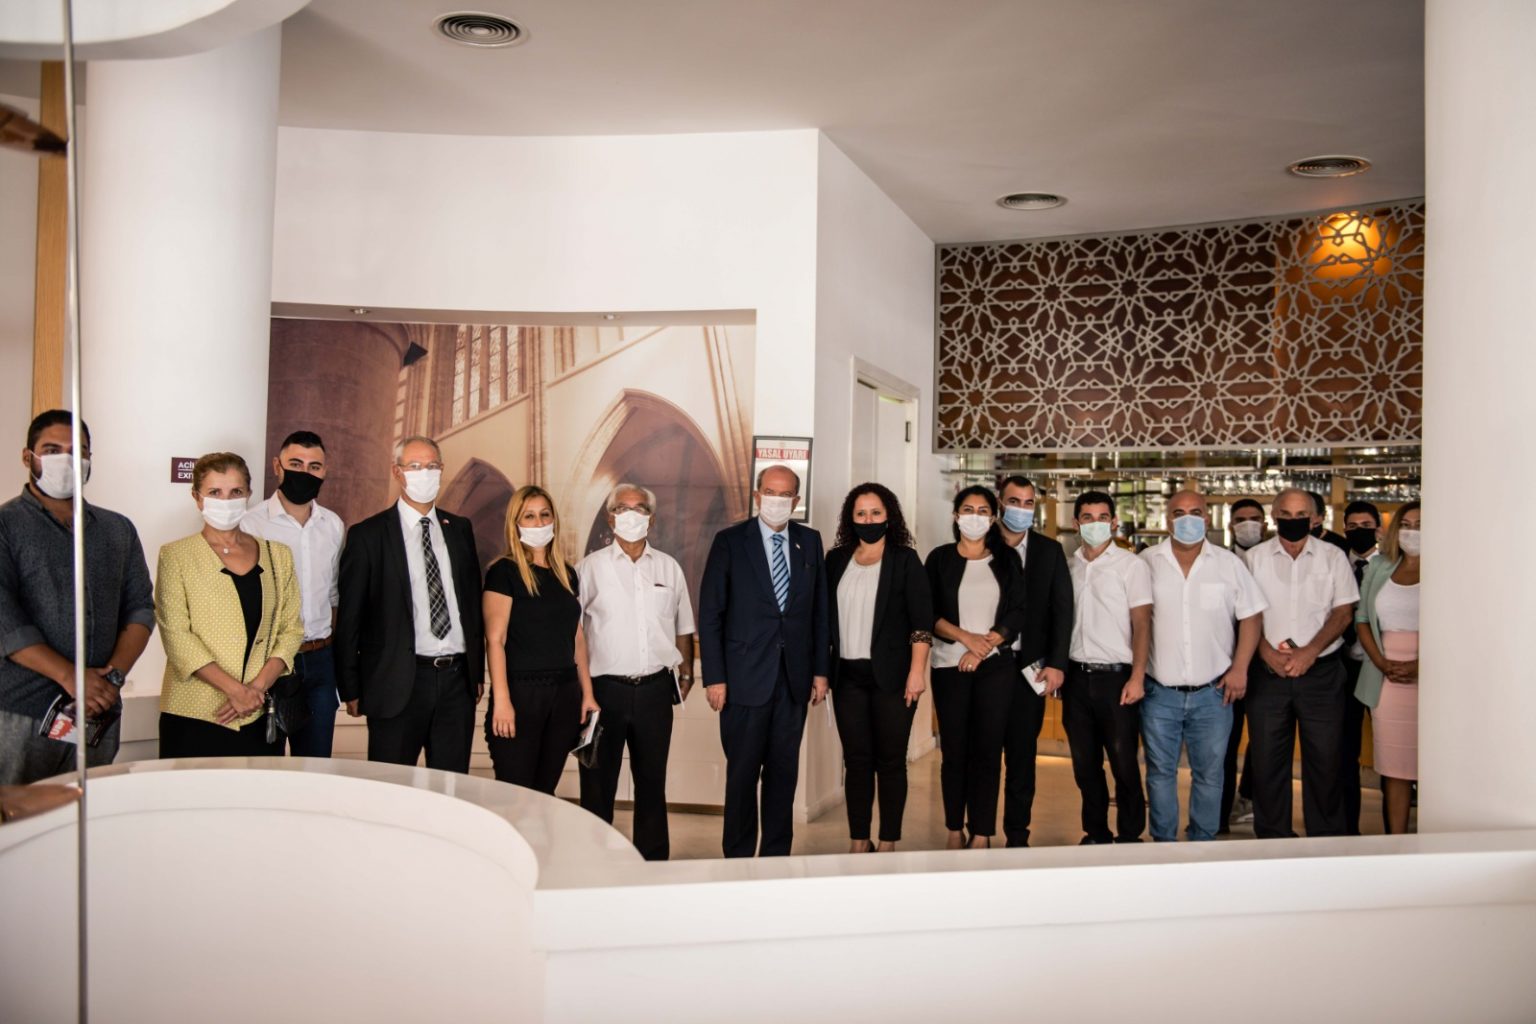 Gazimağusalı avukatlardan Maraş’ın açılmasına tam destek